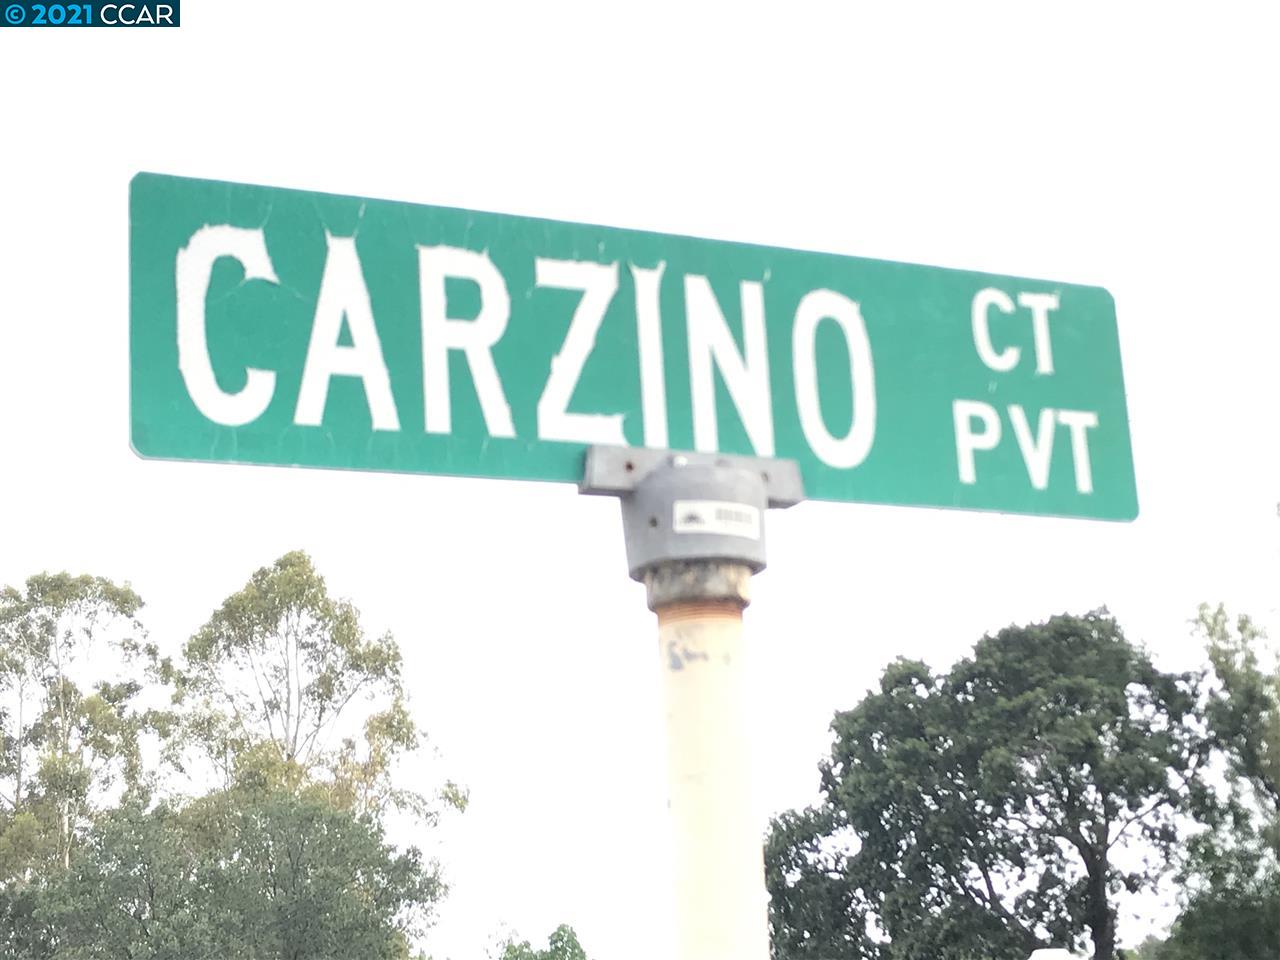 Photo of Carzino Ct in Concord, CA